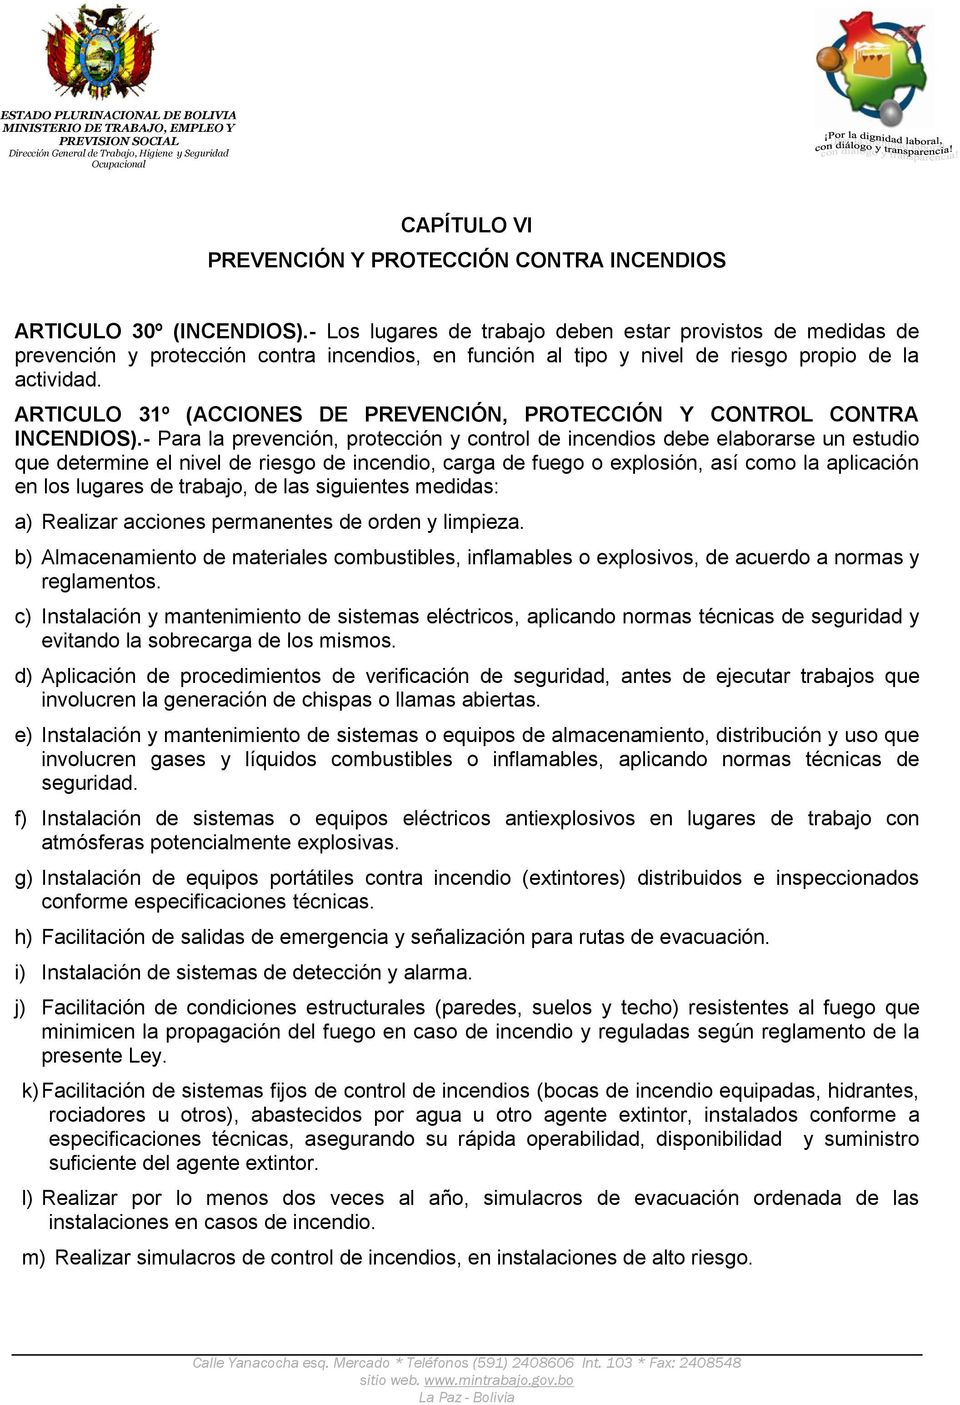 ARTICULO 31º (ACCIONES DE PREVENCIÓN, PROTECCIÓN Y CONTROL CONTRA INCENDIOS).